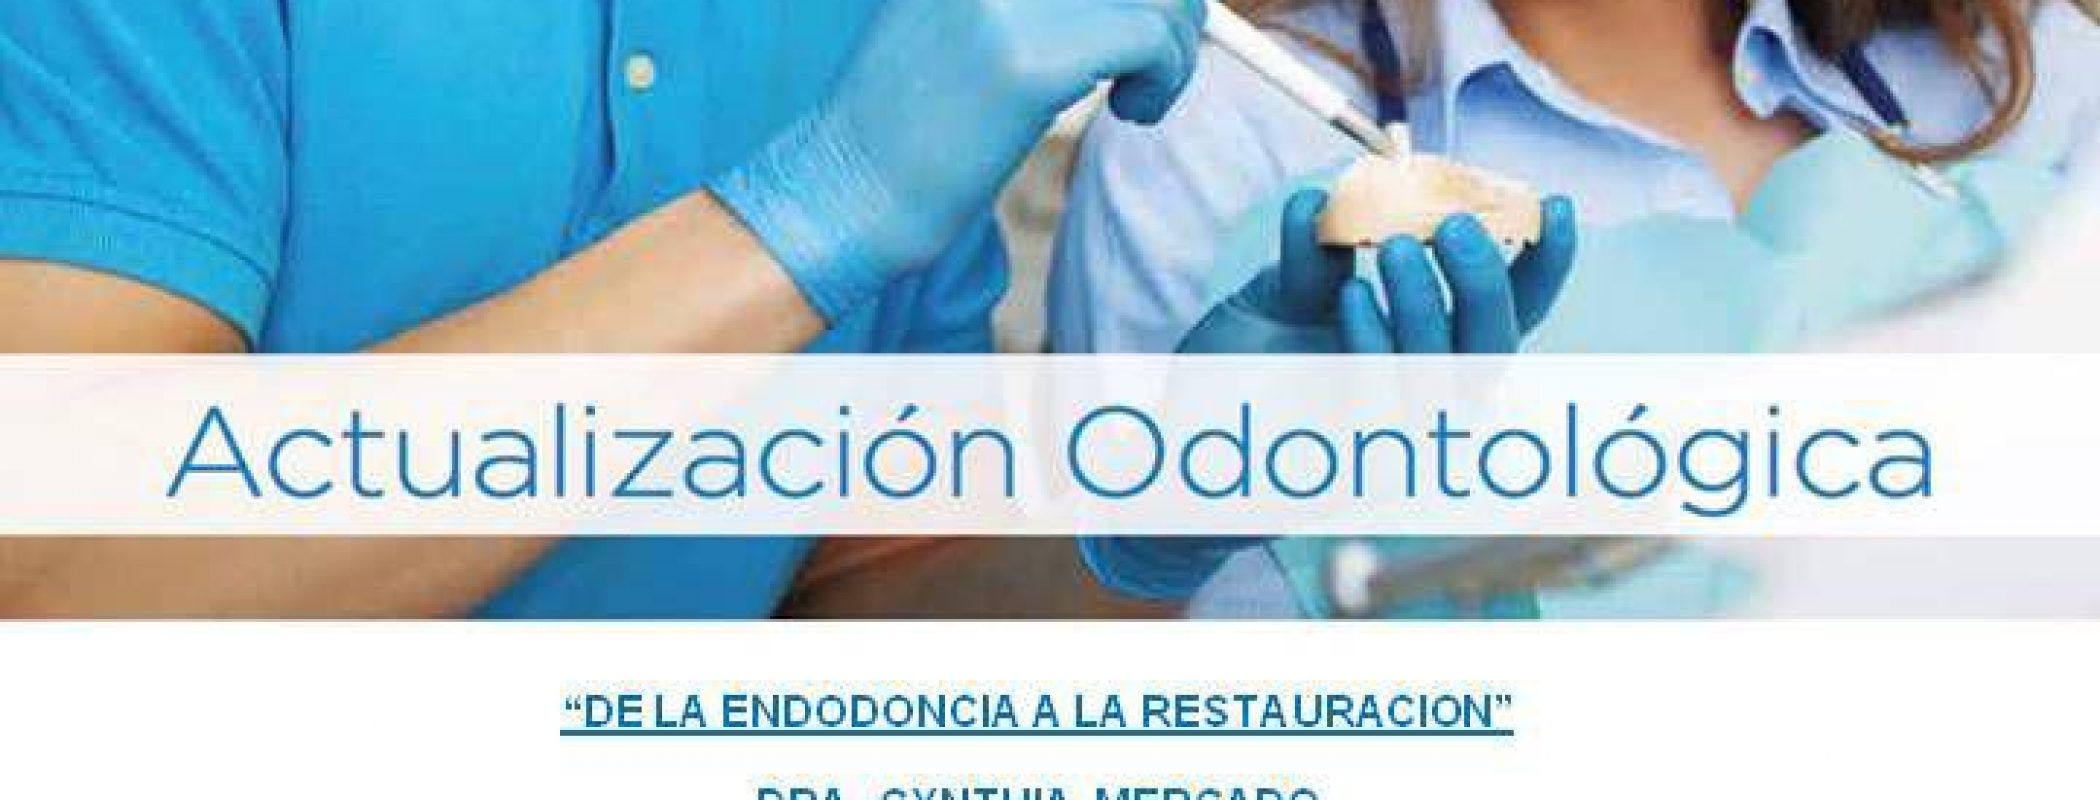 Actualización Odontológica “De la Endodoncia a la Restauración” y “Solución Integral”